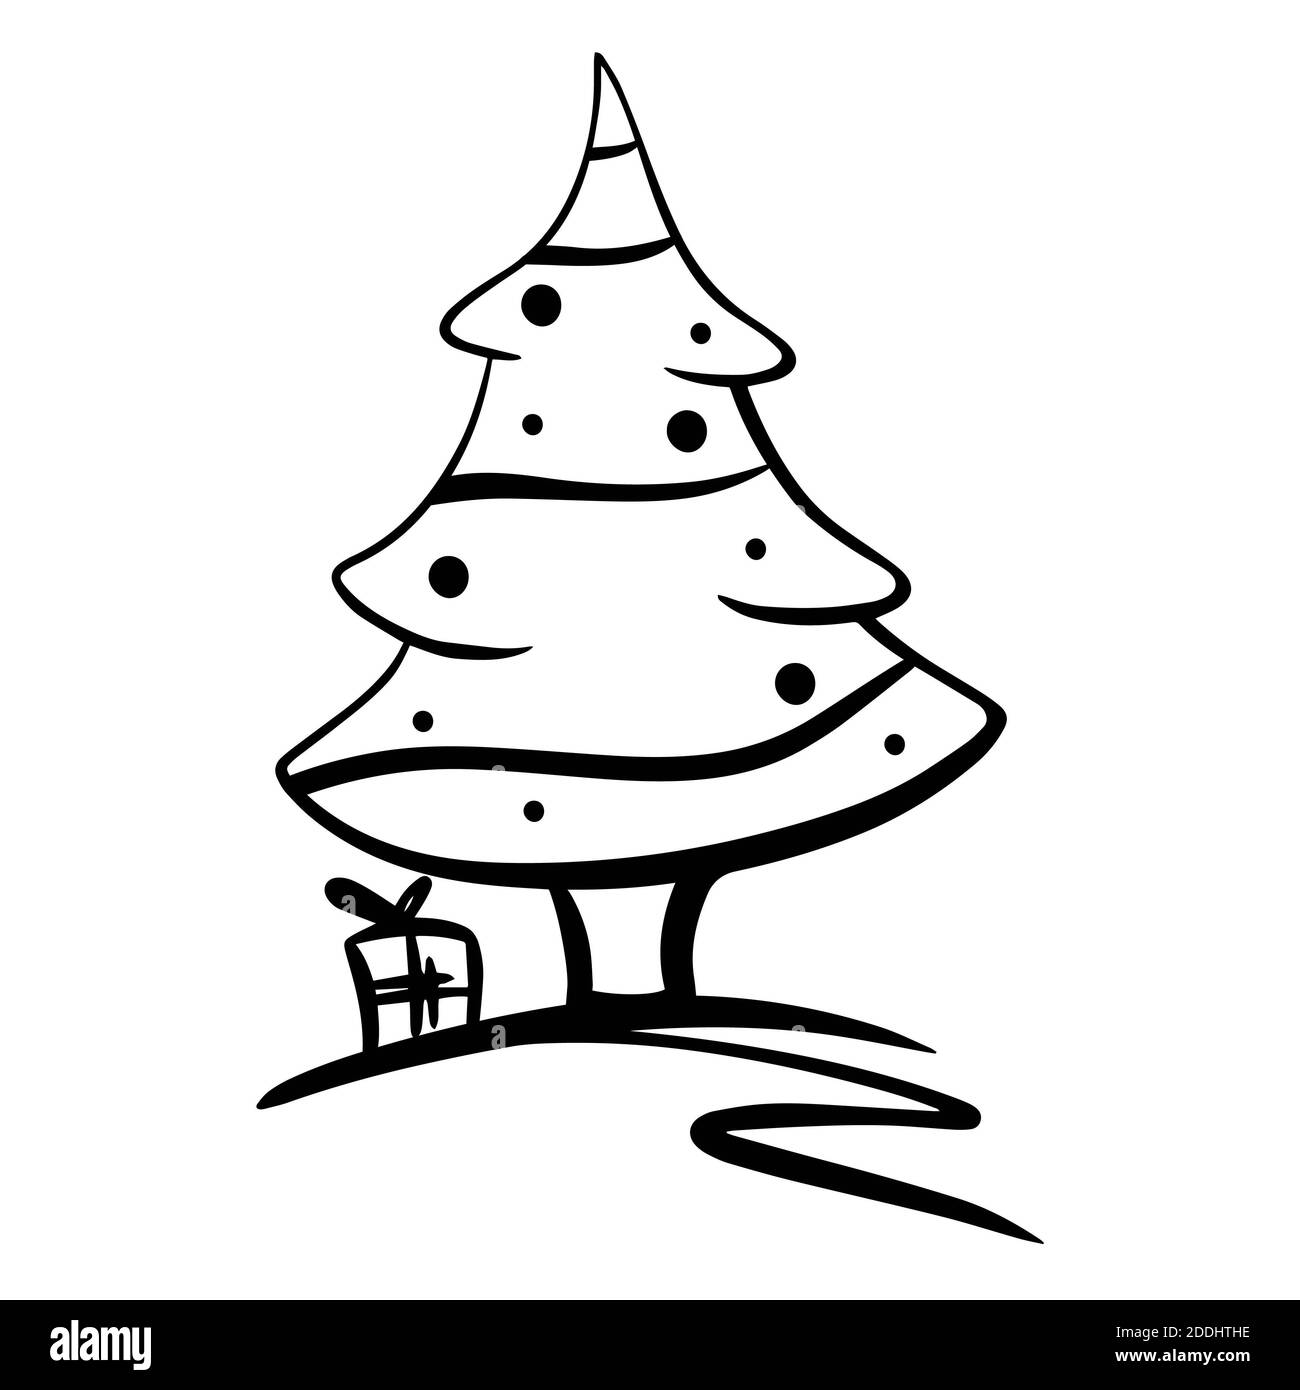 Icona alberi di Natale, vettore semplice disegno. Simbolo nero della linea dell'albero di natale con presenta isolati su sfondo bianco Foto Stock